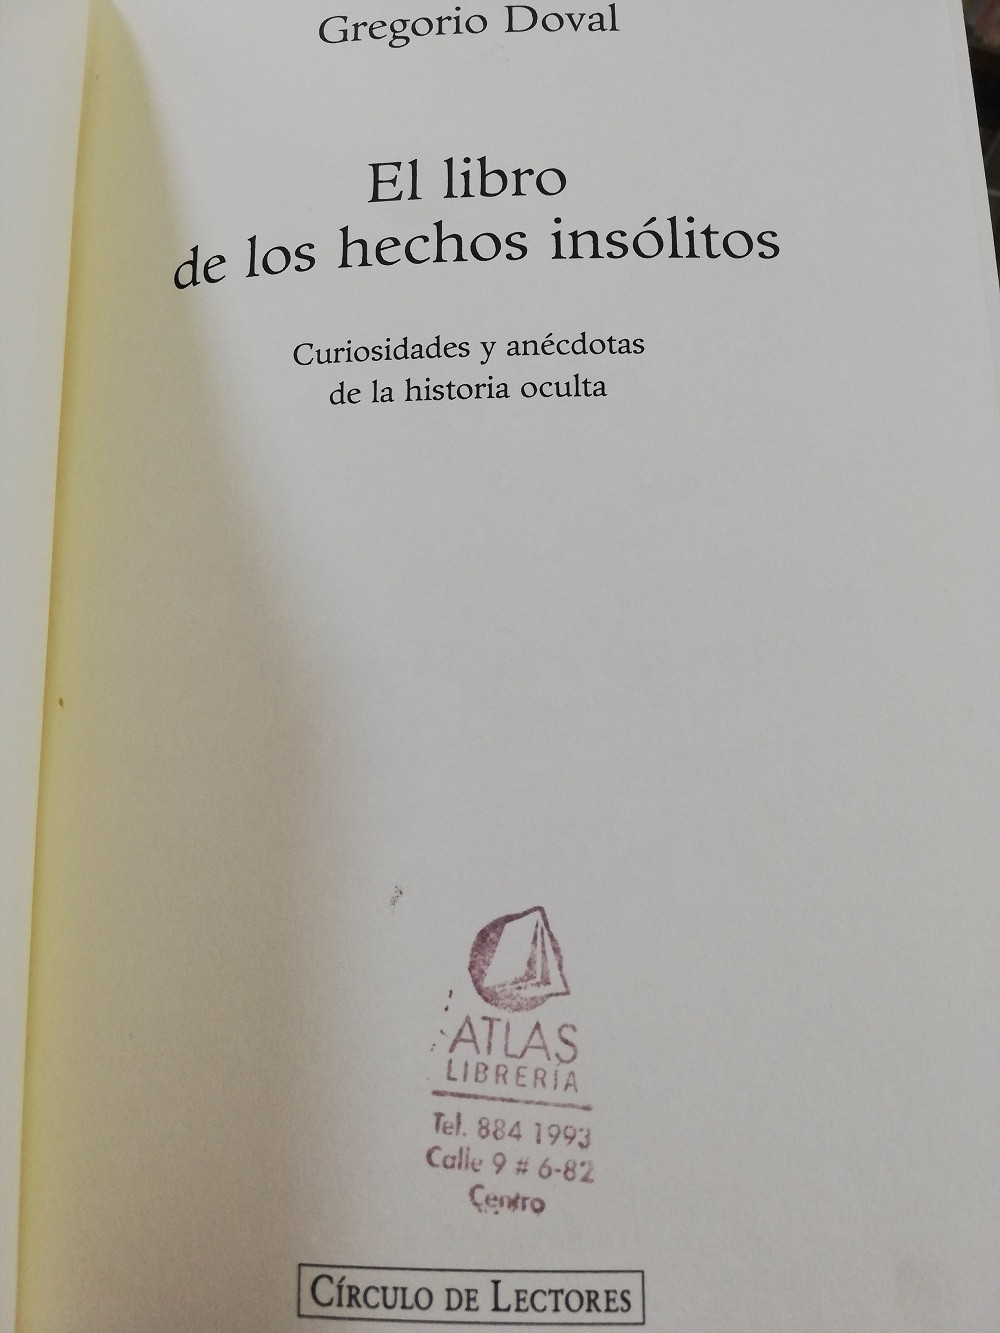 Imagen EL LIBRO DE LOS HECHOS INSÓLITOS - GREGORIO DOVAL 2